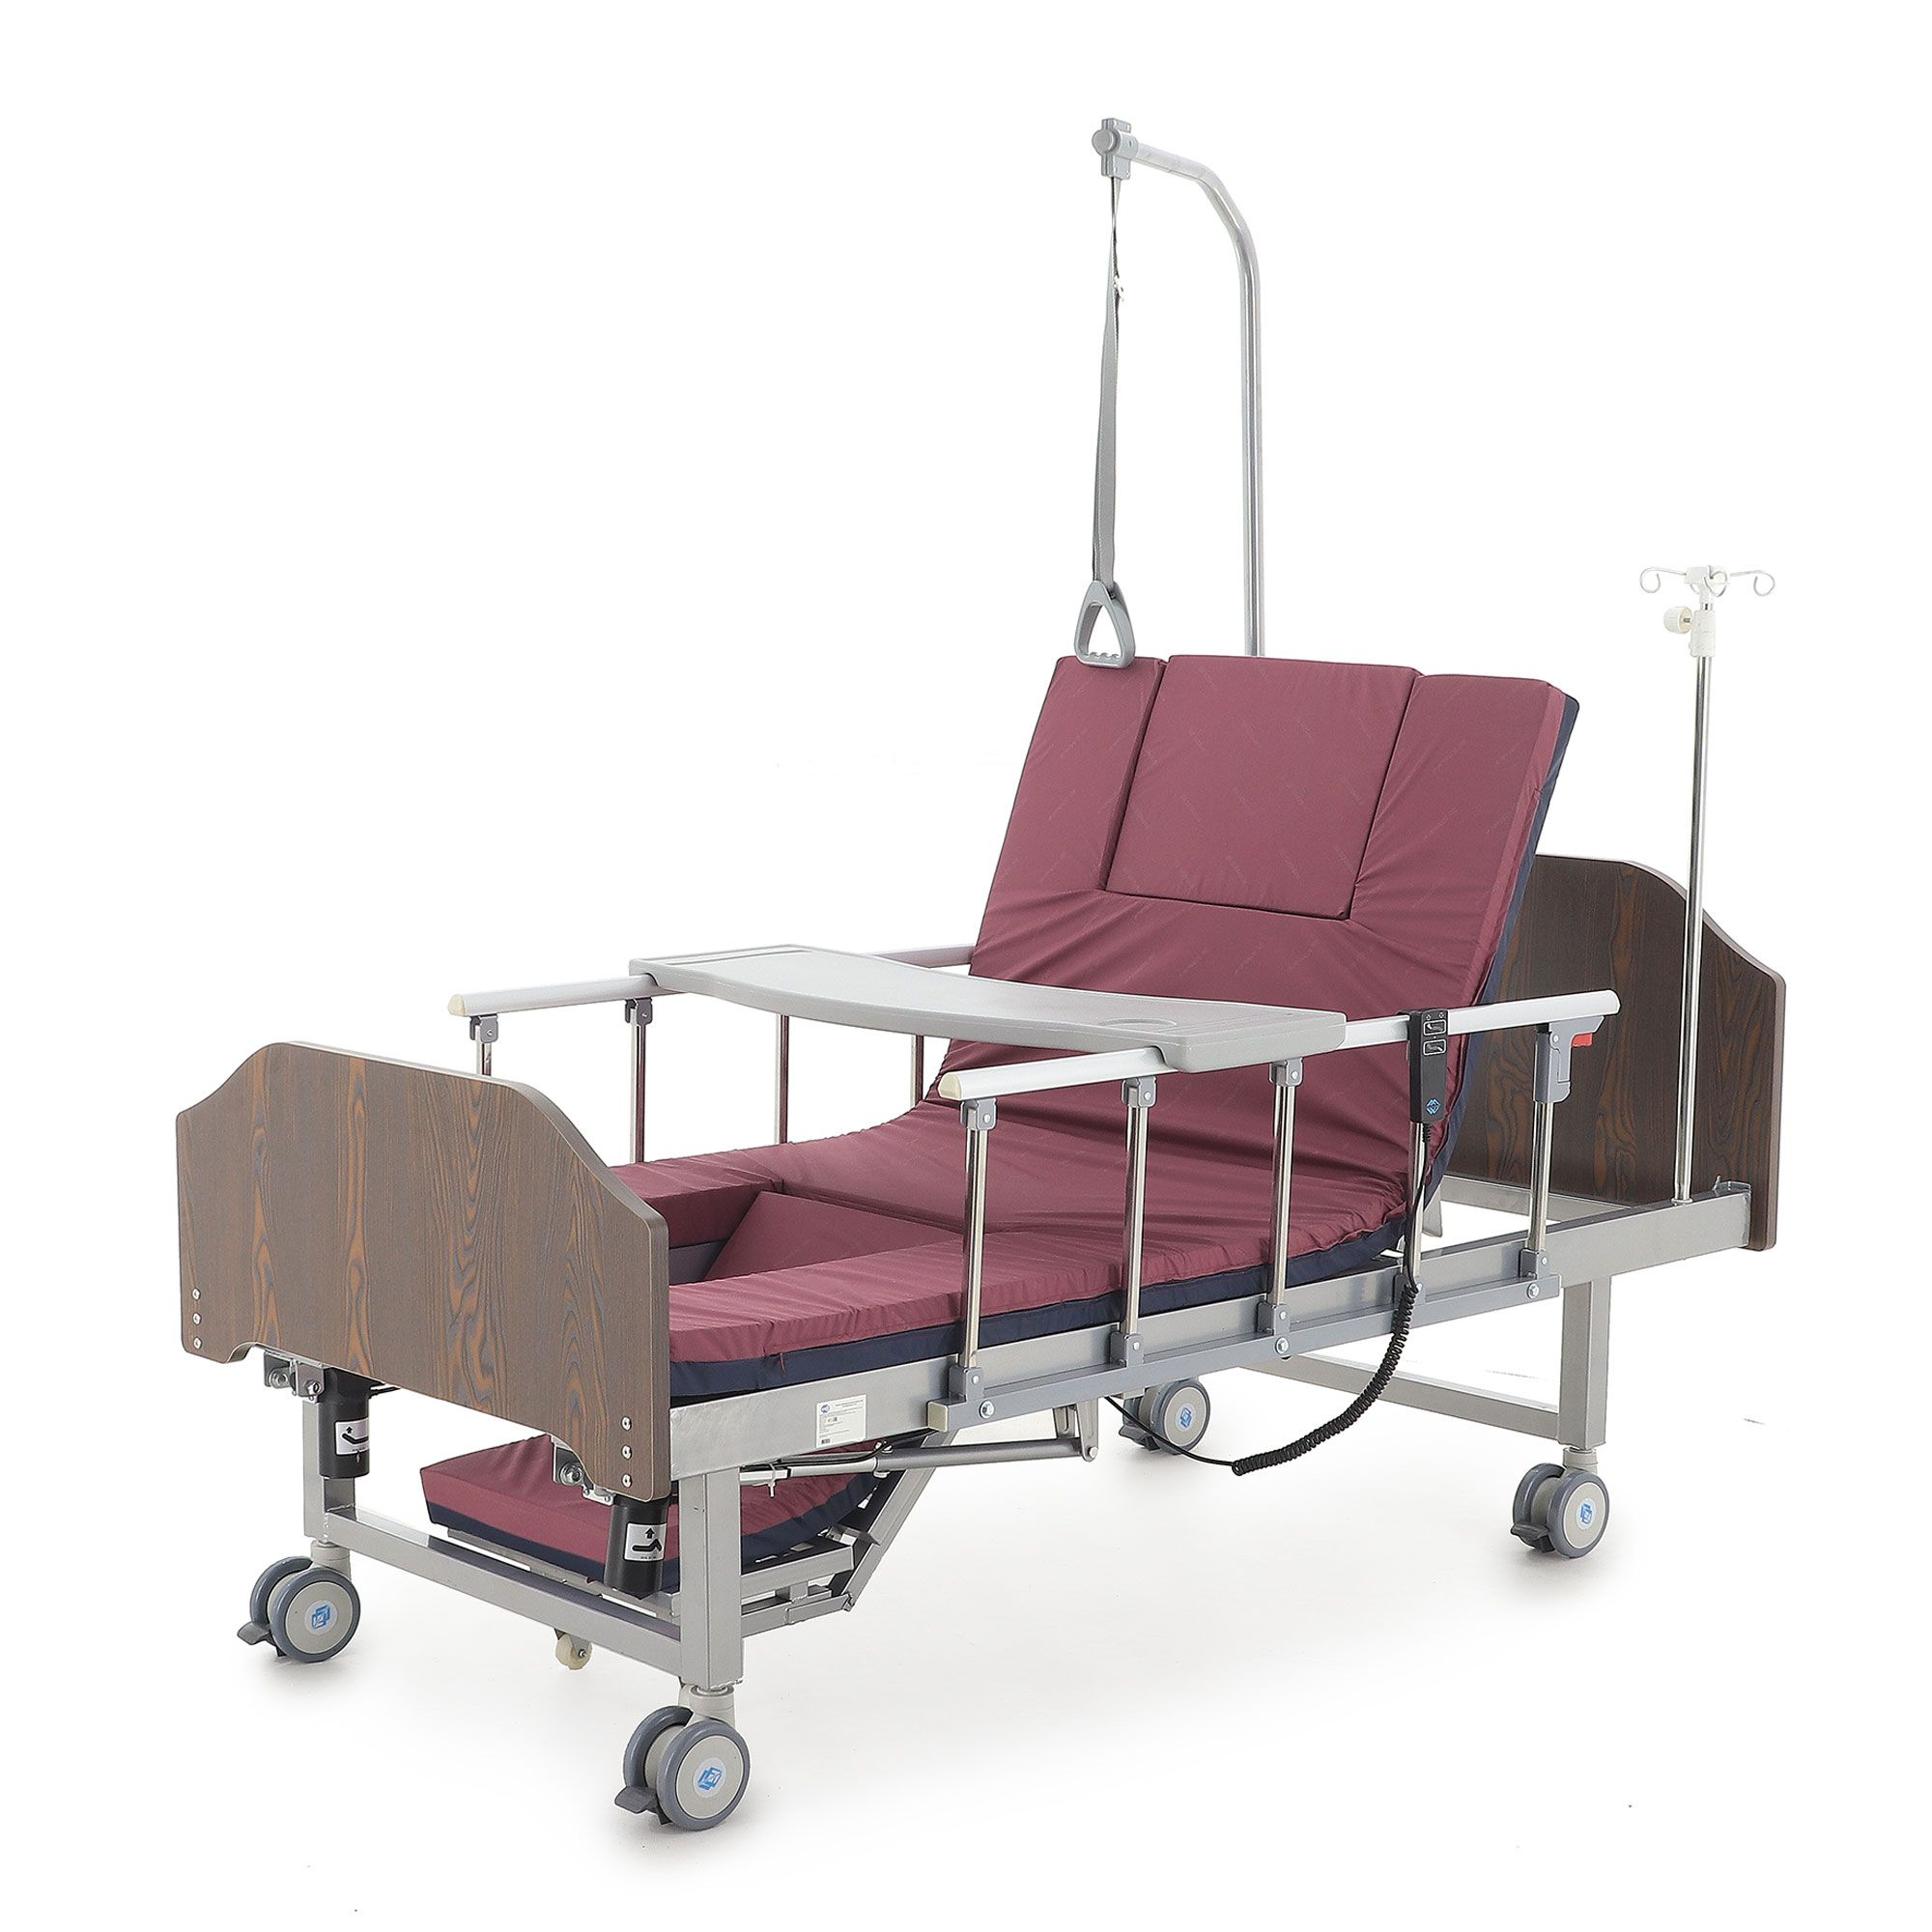 Кровати функциональные медицинские купить. Yg-6 кровать медицинская. Кровать функциональная медицинская yg-6 (мм-191н). Кровать функциональная медицинская механическая yg-6. Кровать электрическая yg-2 (ме-2028н-10.